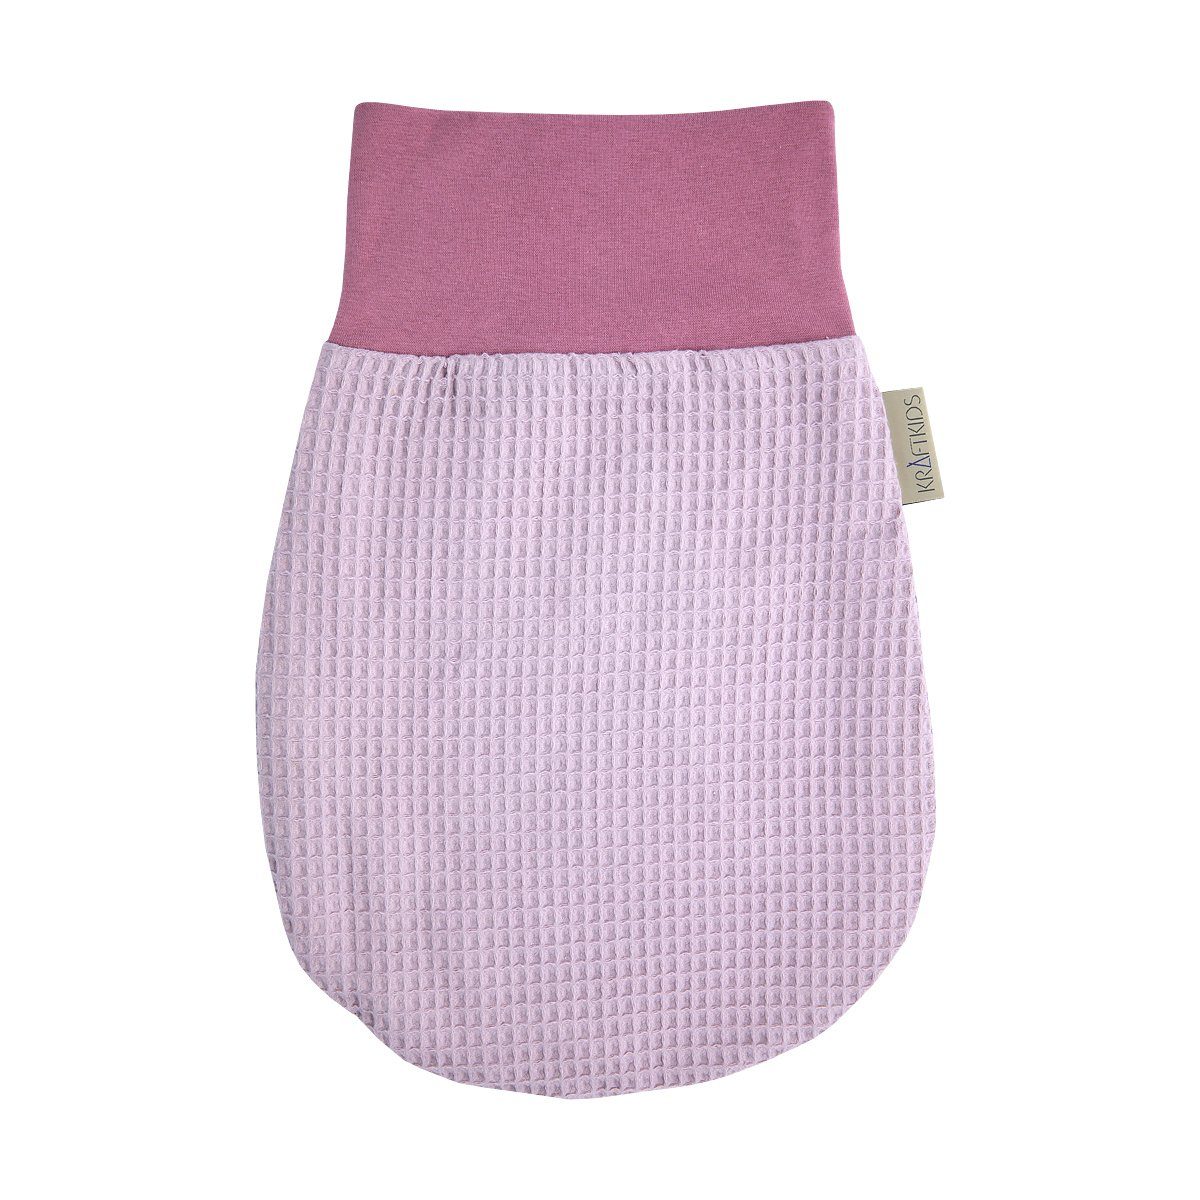 KraftKids Babyschlafsack Waffel Piqué rosa, Sommer/Frühling-Variante, 100% Baumwolle, hochwärtiger Stoff, zwei Schichten Stoff